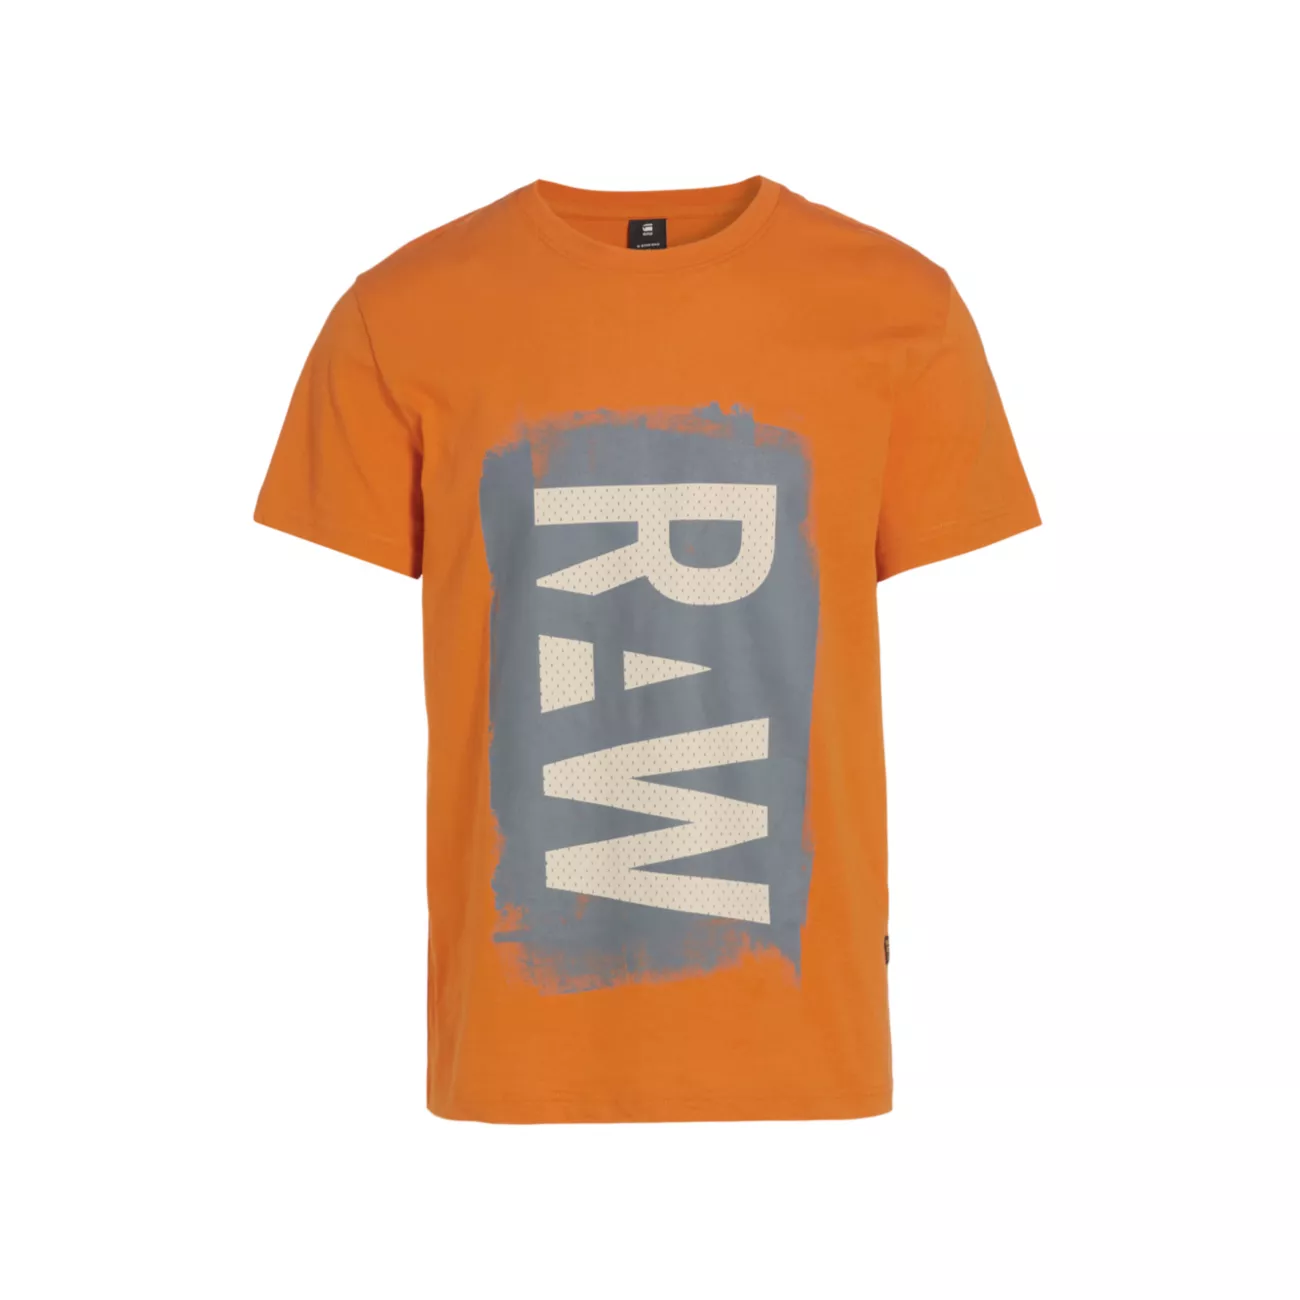 Футболка с нарисованным логотипом Raw G-STAR RAW